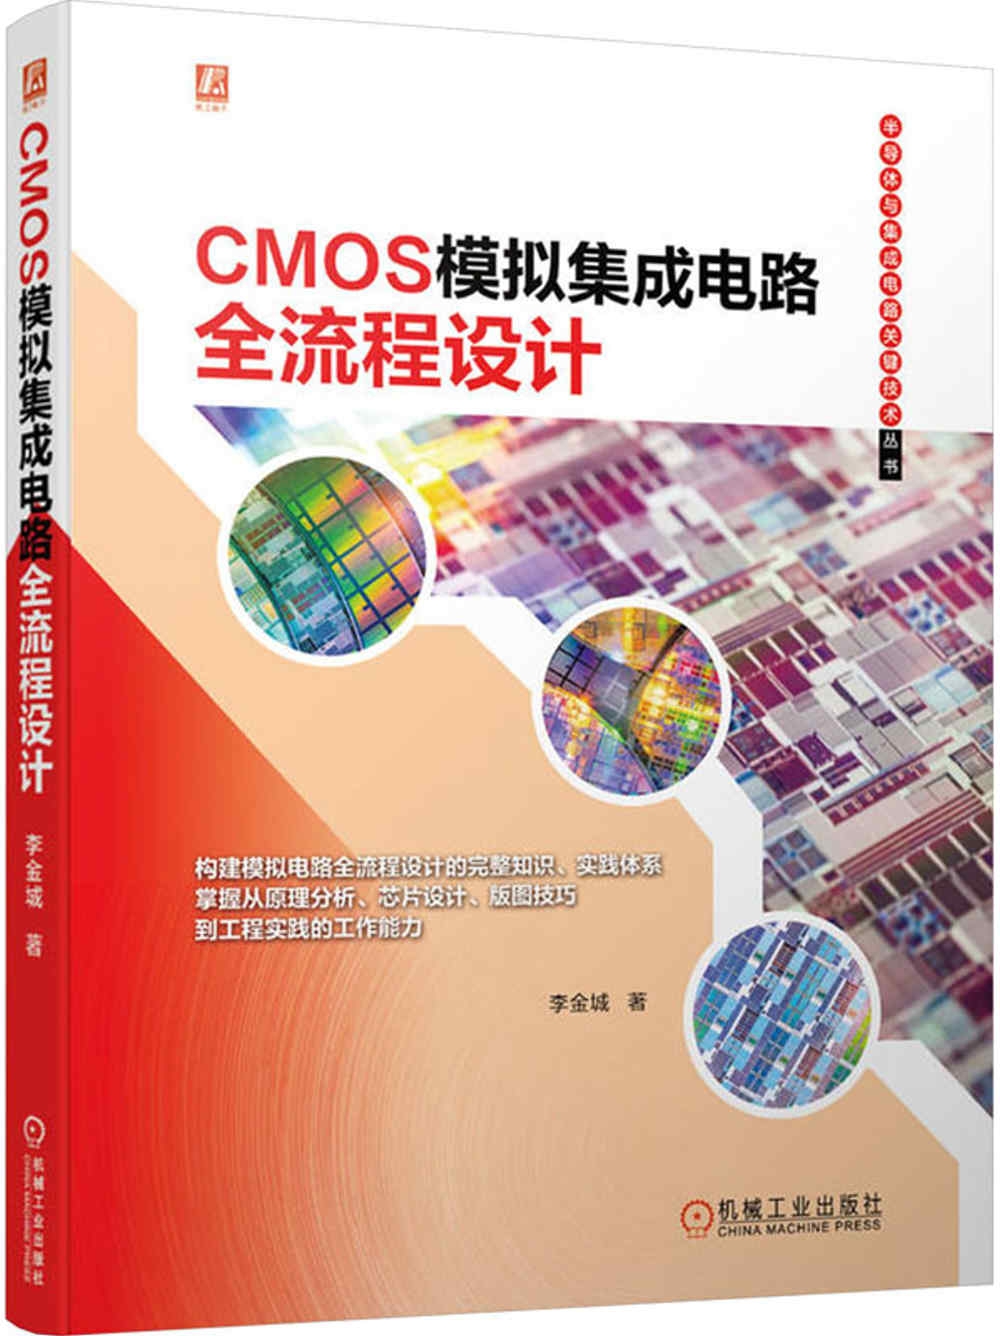 CMOS模擬集成電路全流程設計